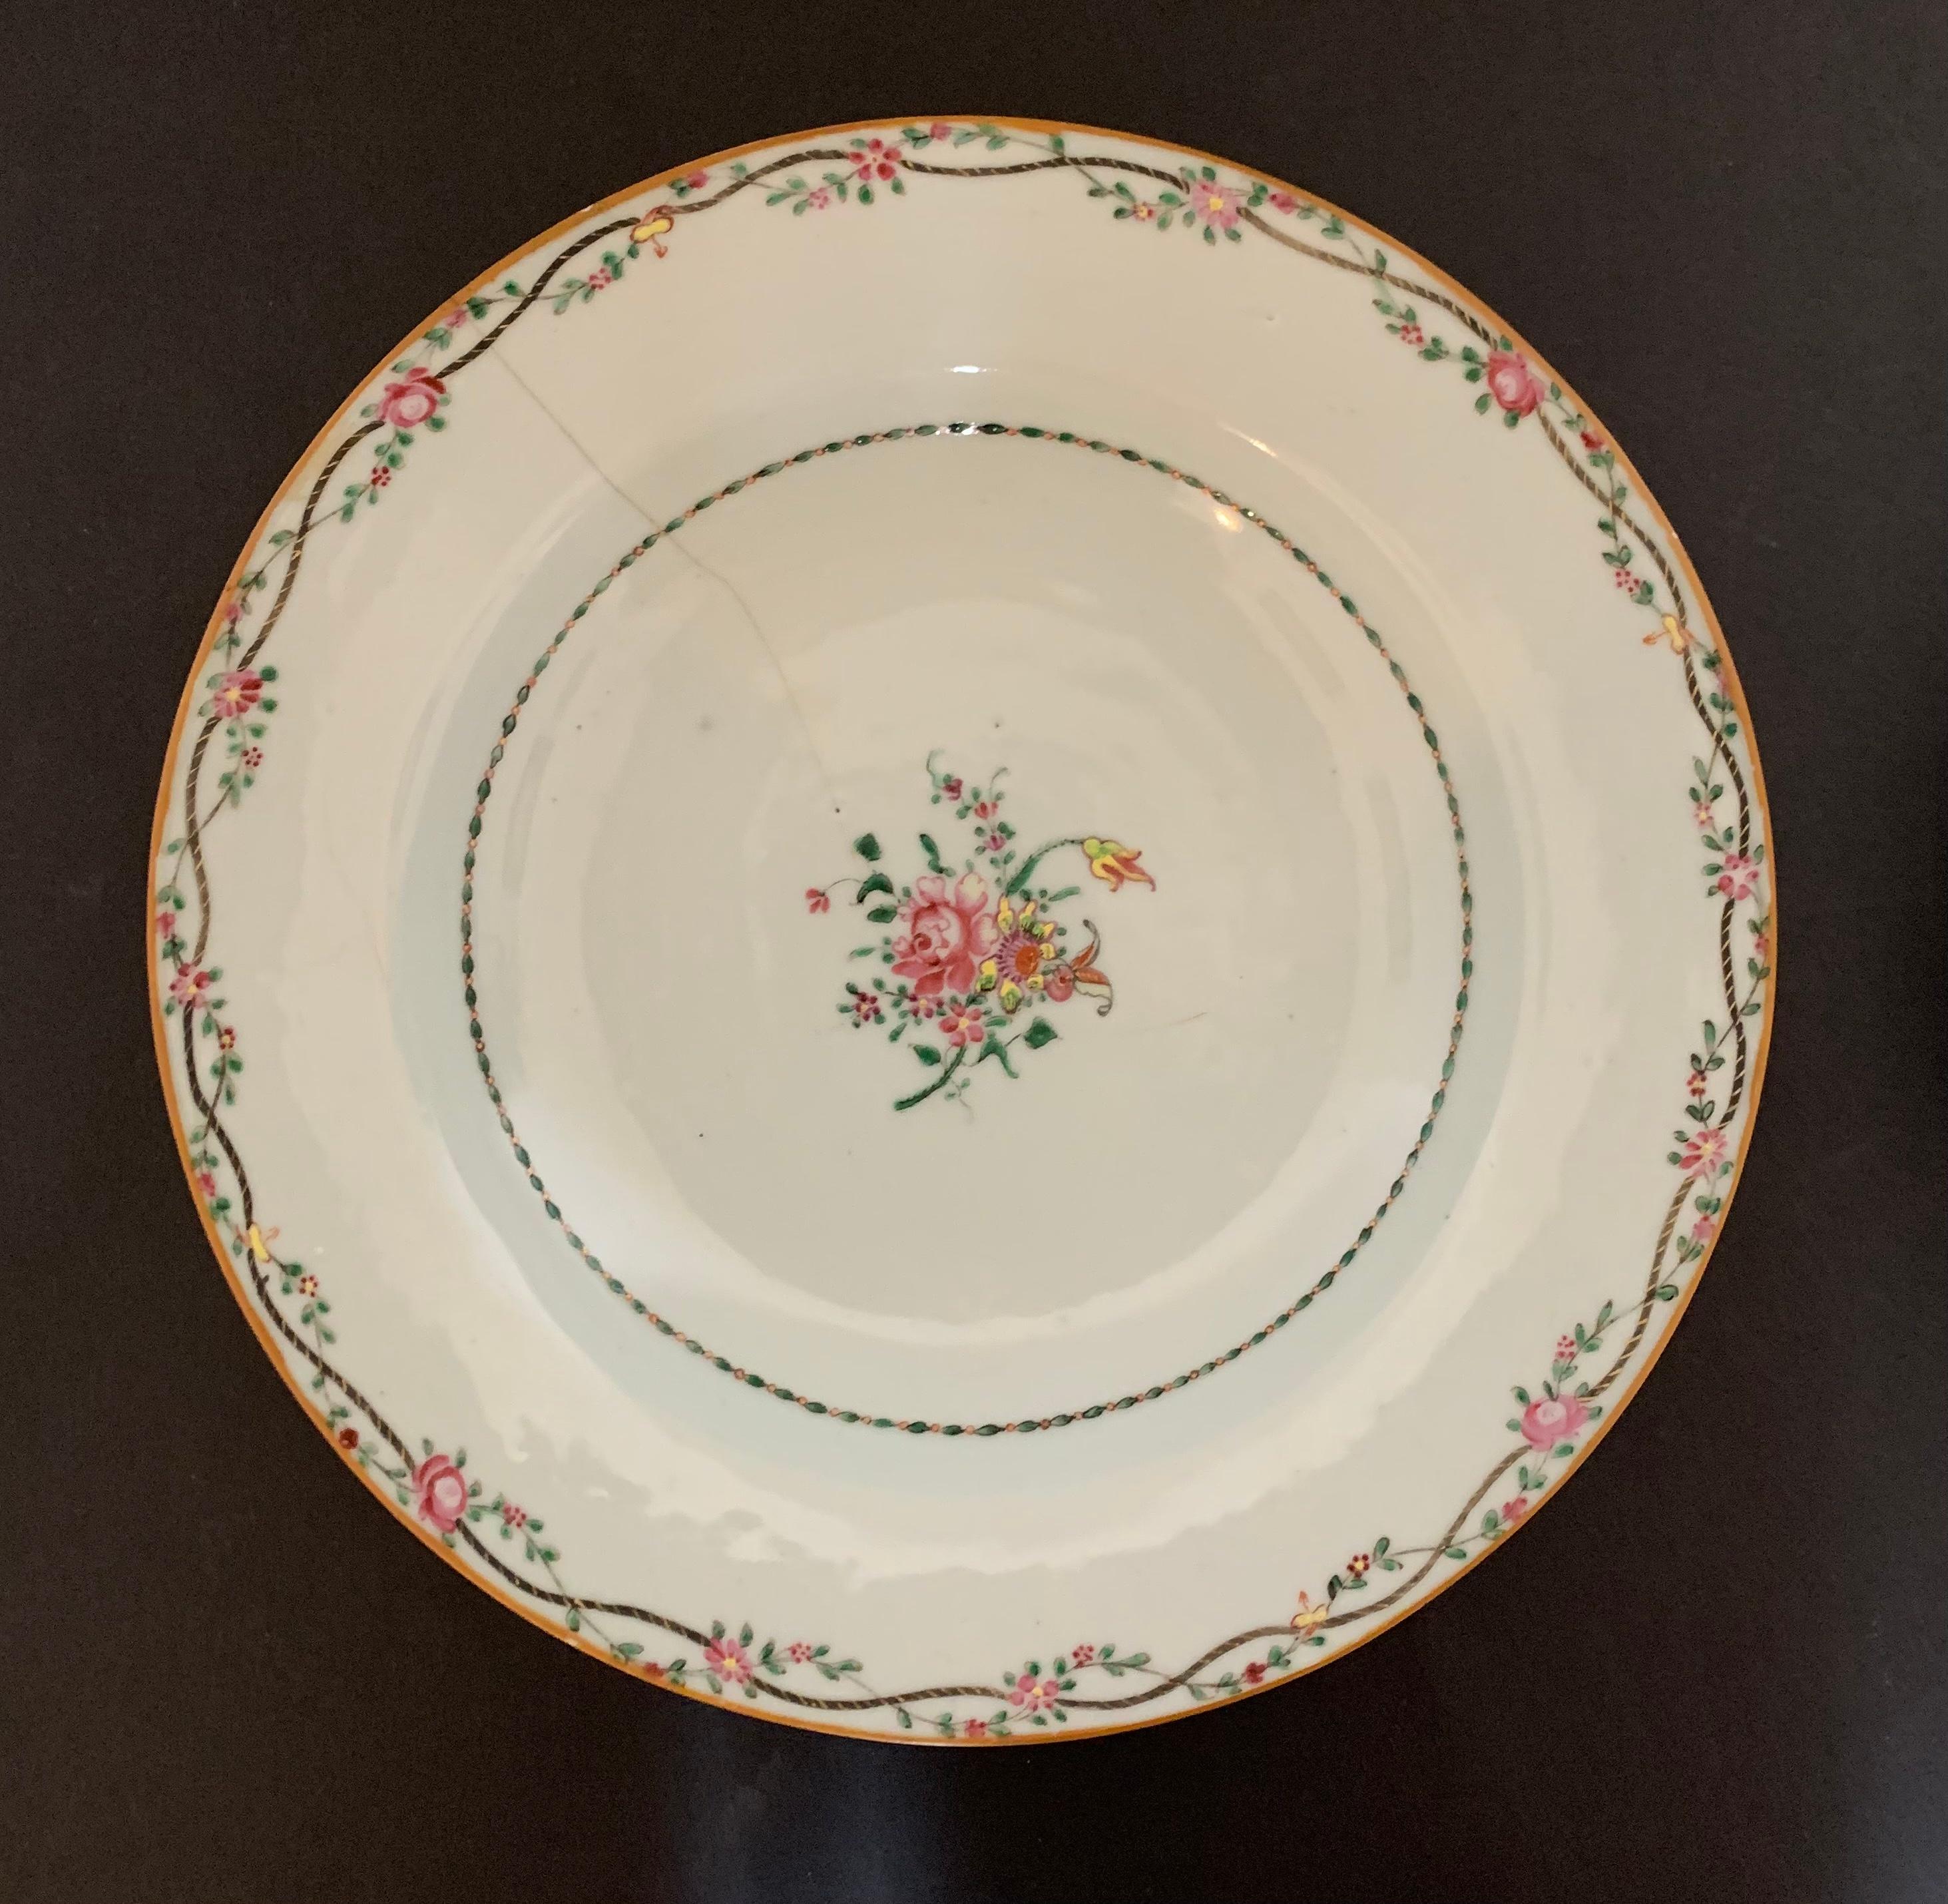 Paar chinesische Teller mit floralen Motiven aus der Compagnie des Indes aus dem 18. Jahrhundert. Er ist in der Mitte mit einem Blumenstrauß verziert. Der Umriss ist mit einer Blumengirlande verziert, die mit einem Element aus Passepartout